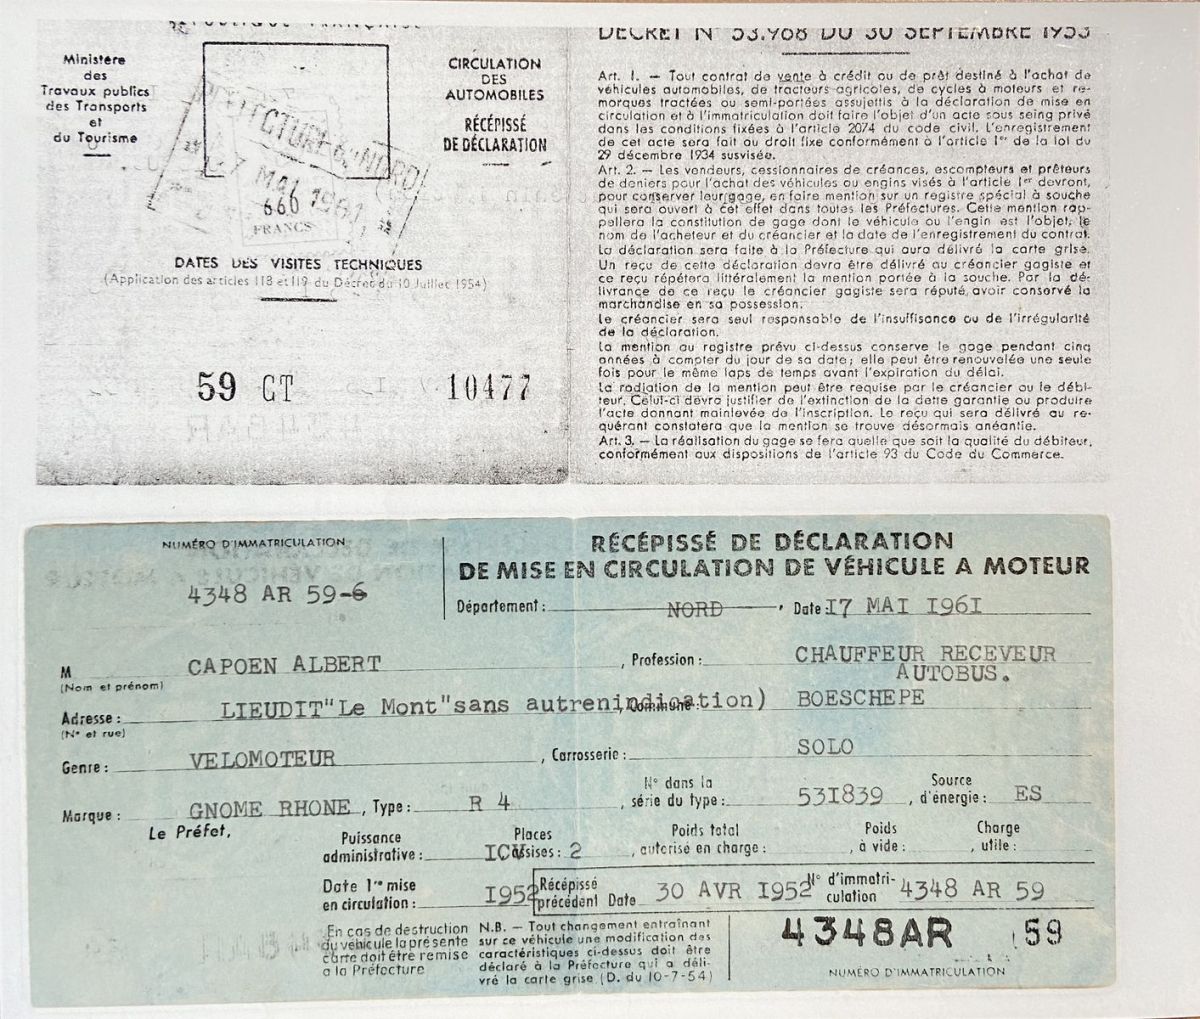 2 Rcpiss De Dclaration De Mise En Circulation De Vhicule Moteur De Albert Capoen 1961